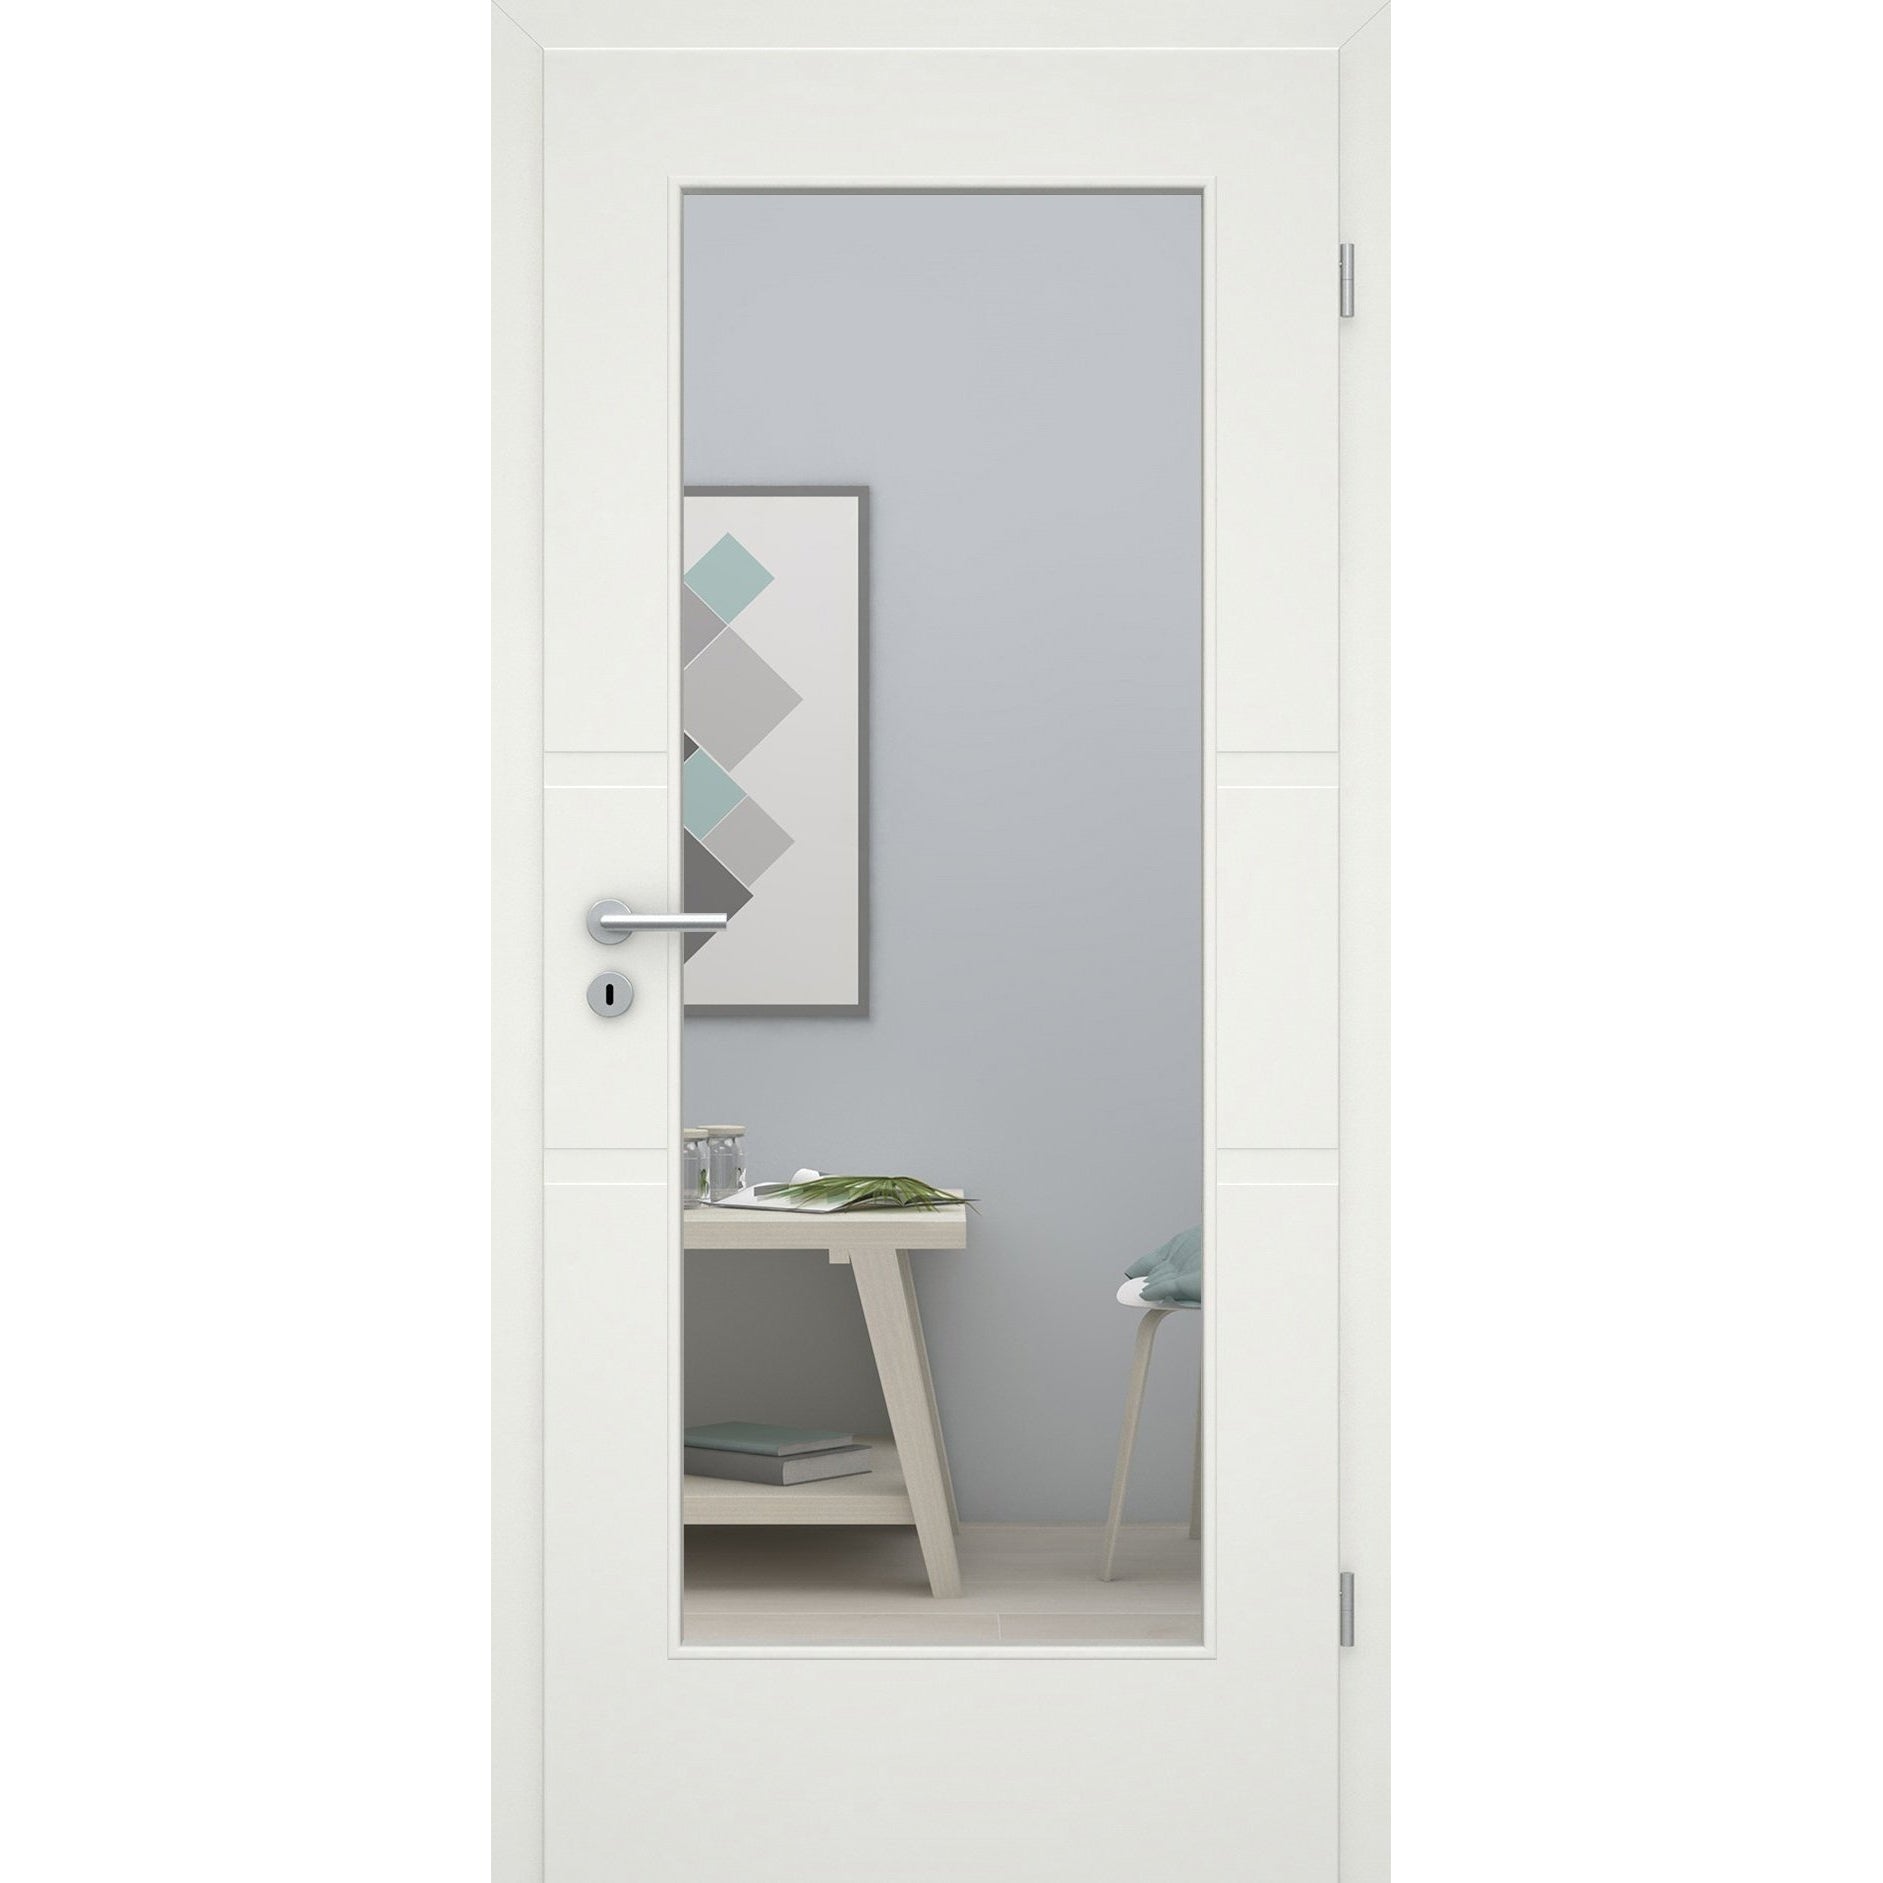 Zimmertür mit Lichtausschnitt soft-weiß 2 breite Rillen Eckkante - Modell Designtür QB21LA